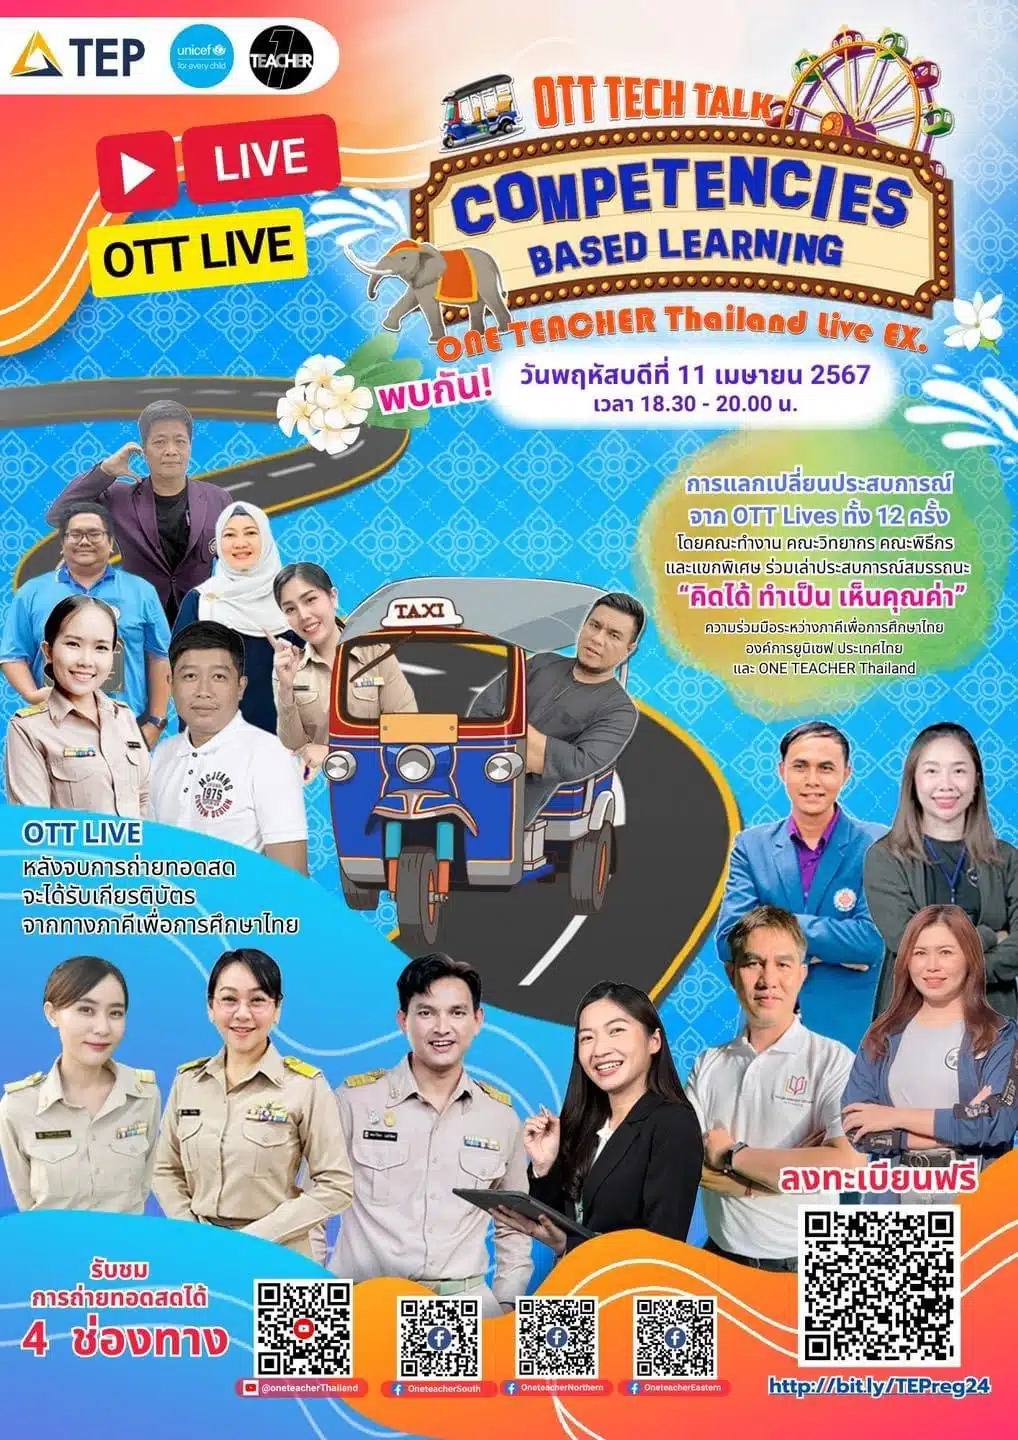 ลิงก์ลงทะเบียน OTT LIVE Competencies Based Learning การแลกเปลี่ยนประสบการณ์จาก OTT Live ทั้ง 12 ครั้ง วันพฤหัสบดี ที่ 11 เมษายน 2567 รับเกียรติบัตรฟรี โดยสำนักงานปลัดกระทรวงศึกษาธิการ และองค์การยูนิเซฟ ประเทศไทย